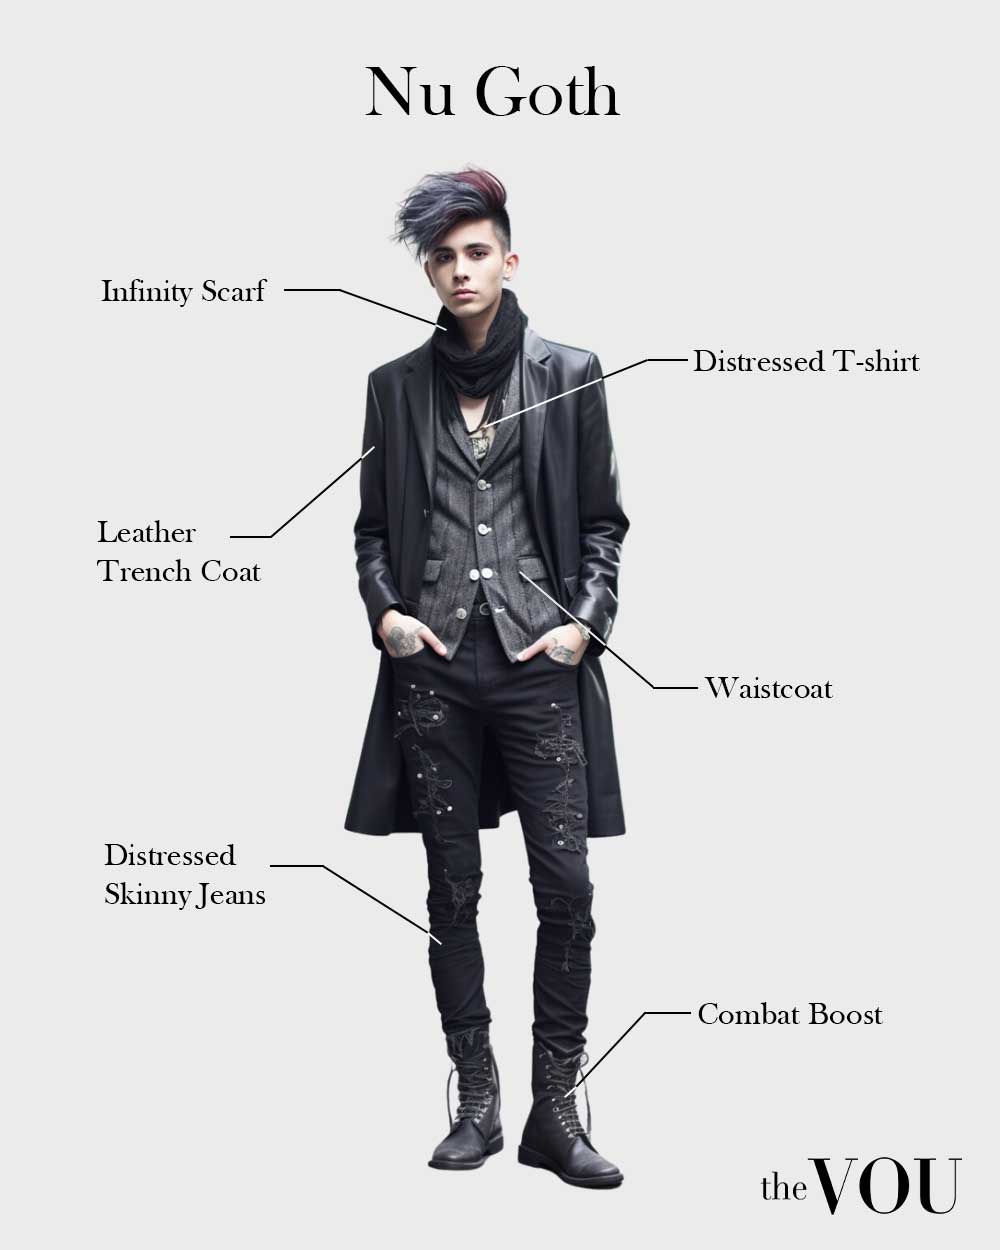 Male Nu Goth fashion style